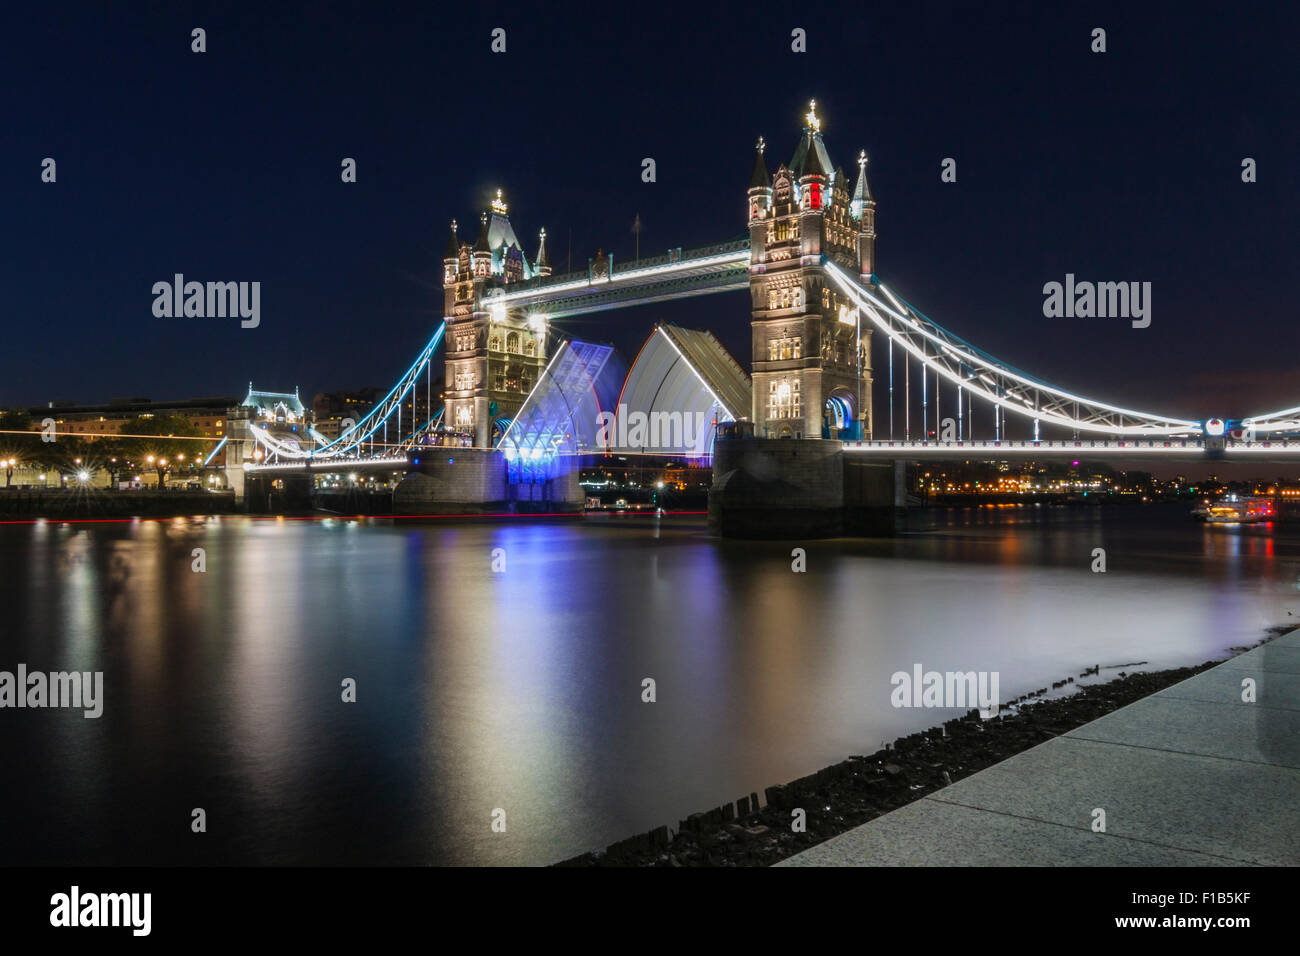 Tower Bridge bei Nacht, London, England, Vereinigtes Königreich ein Href = "http://www.aprishot.com/media.details.php?mediaID=698" Lizenz Stockfoto